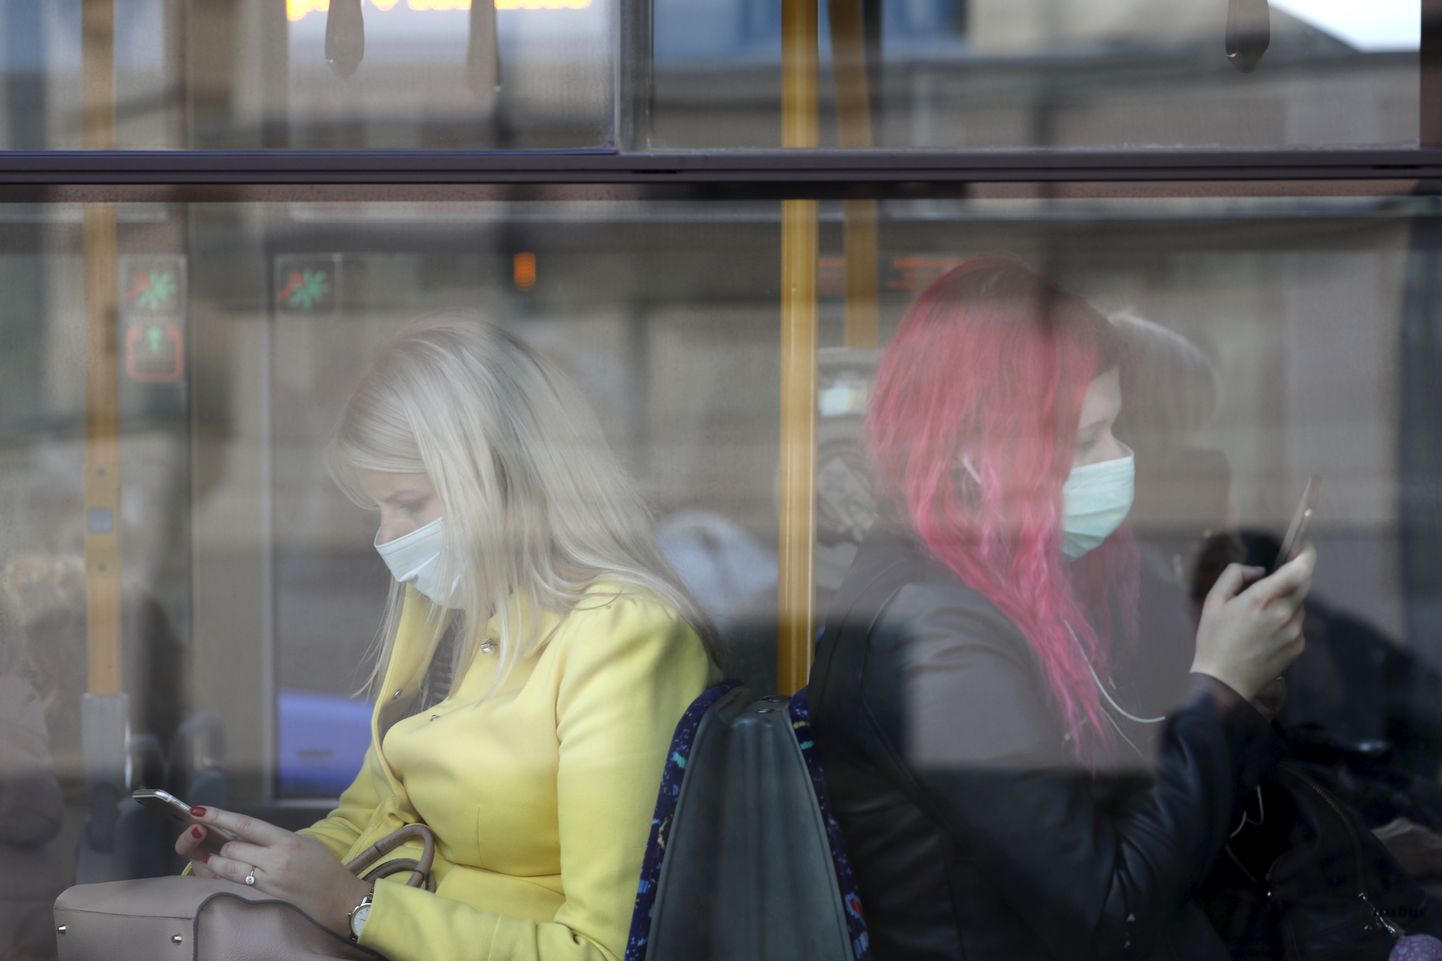 Sümptomiteta inimesega ei taipa teised distantsi hoida, mistõttu on soovitav nakkuse leviku takistamiseks kanda ühistranspordis maski. Pildil maskides reisijad Riia trollibussis 7. oktoobril 2020, mil Lätis muutus ühistranspordis maski kandmine kohustuslikuks.